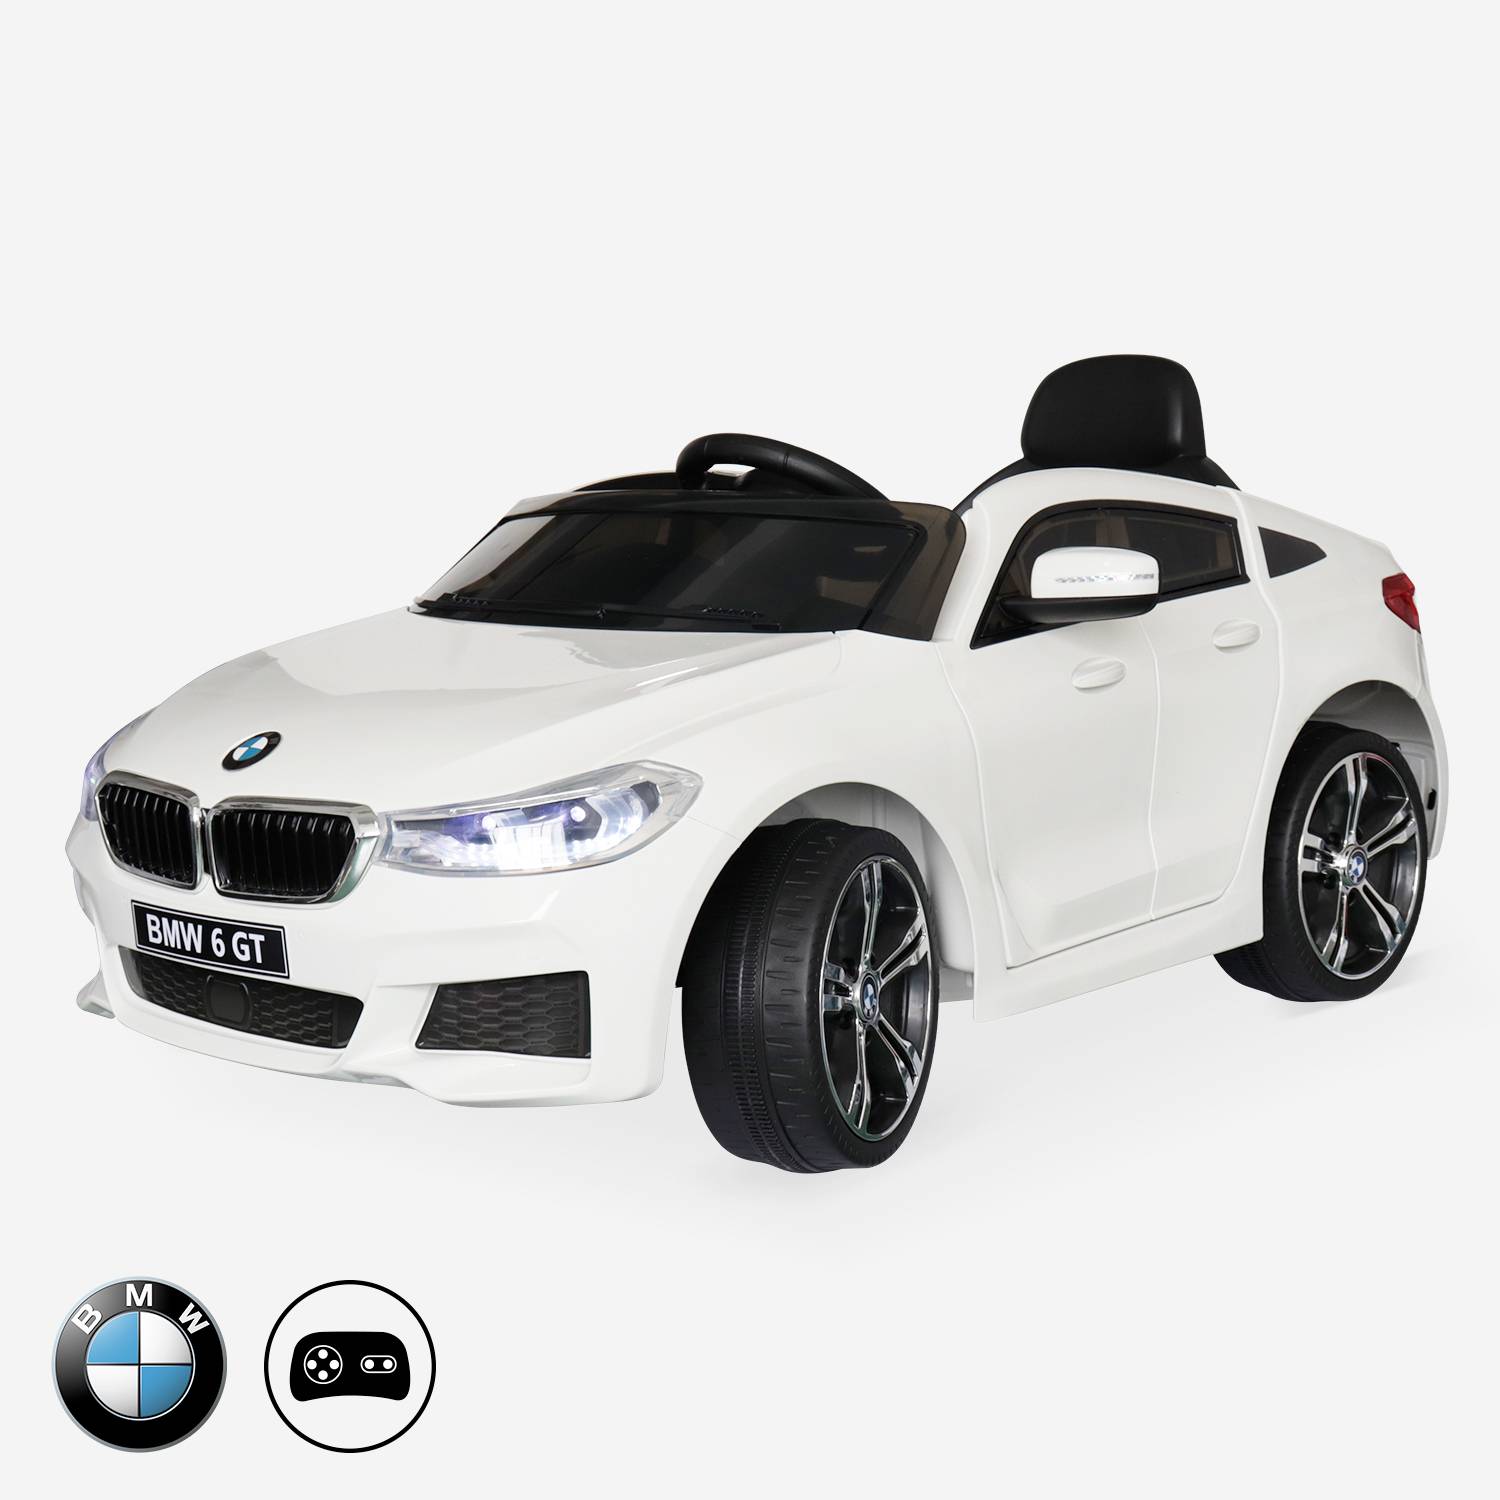 BMW 6er GT Gran Turismo weiß, elektrisches Kinderauto 12V 4 Ah, 1 Sitz, mit Radio und Fernbedienung Photo1